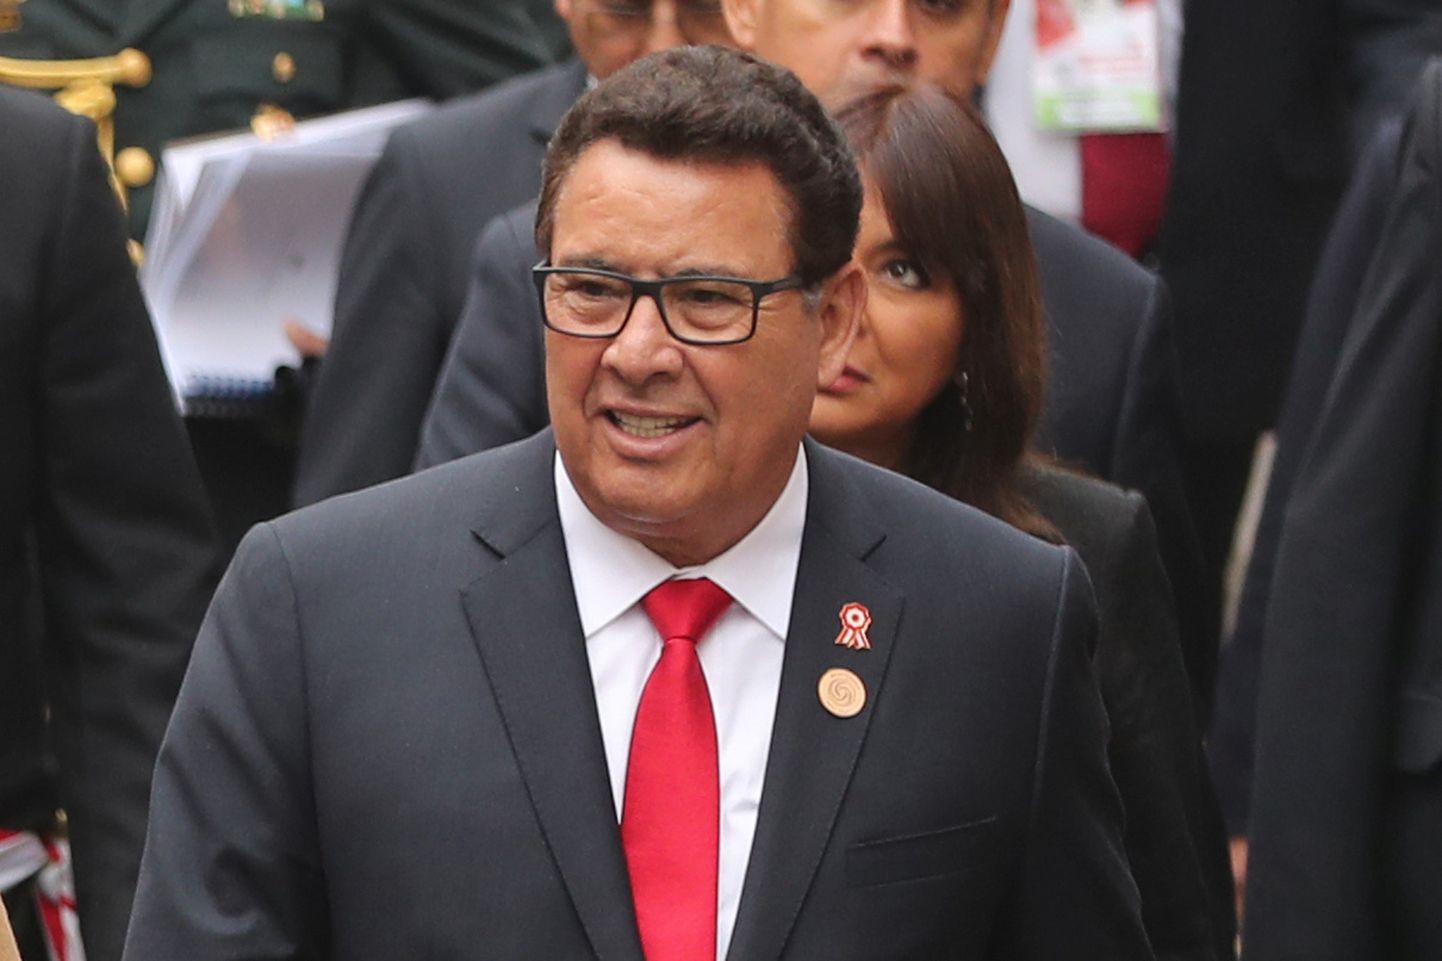 Peruu kaitseminister José Huerta eelmise aasta 28. juulil pealinnas Limas riigi iseseisvuspäeva üritustel.